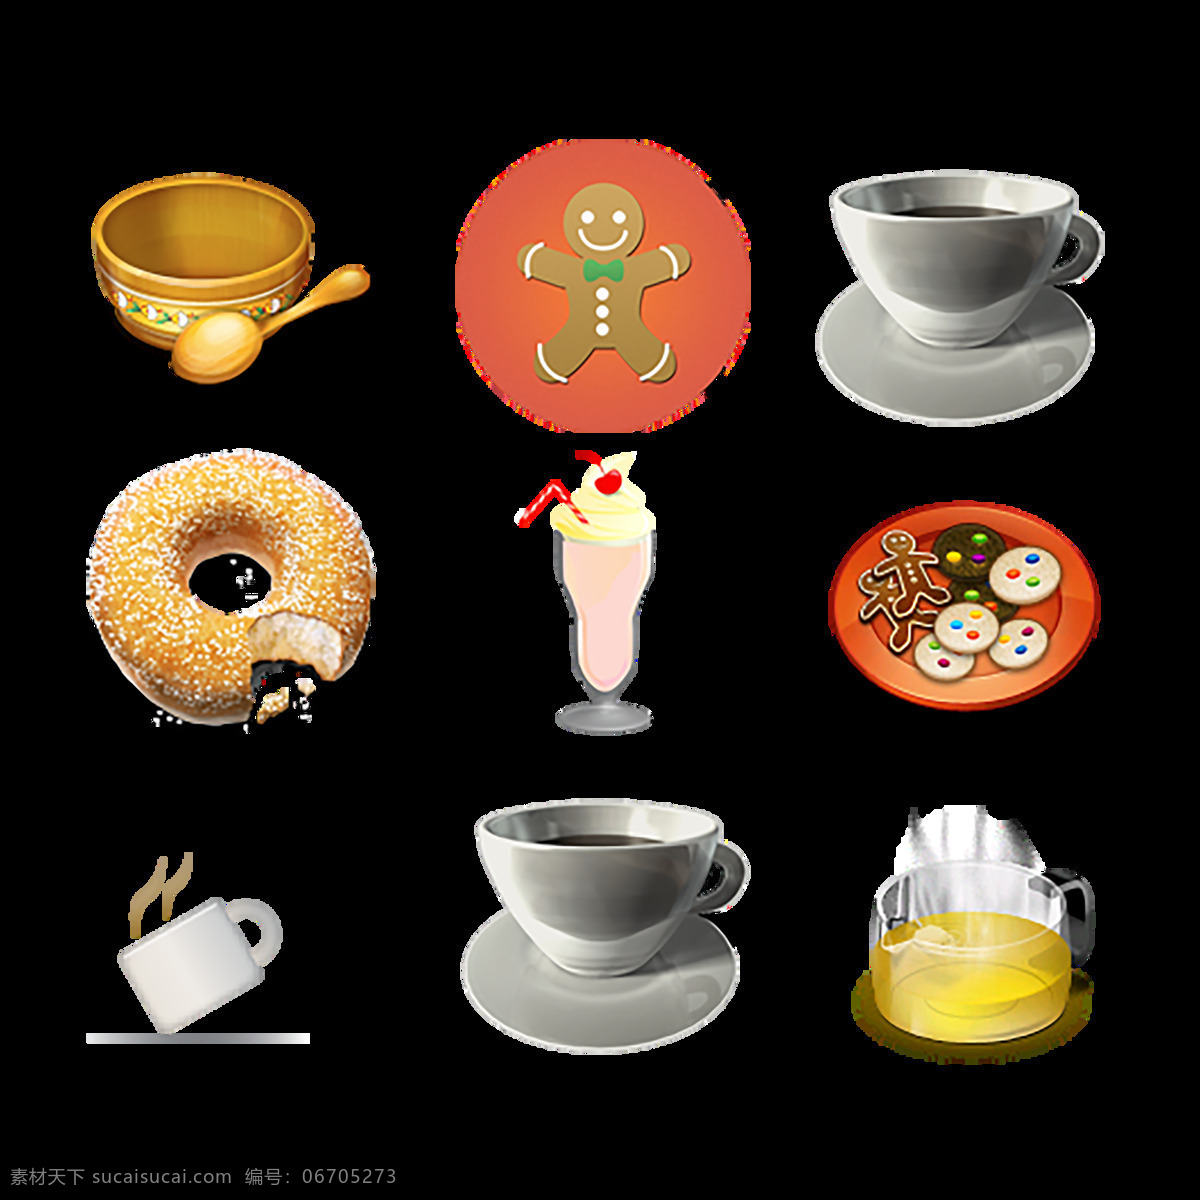 汉堡 奶油 蛋糕 糖 薯条 牛奶 热狗 食物 食品 精美 icon 图标 表情图标 创意图标 图标下载 图标设计